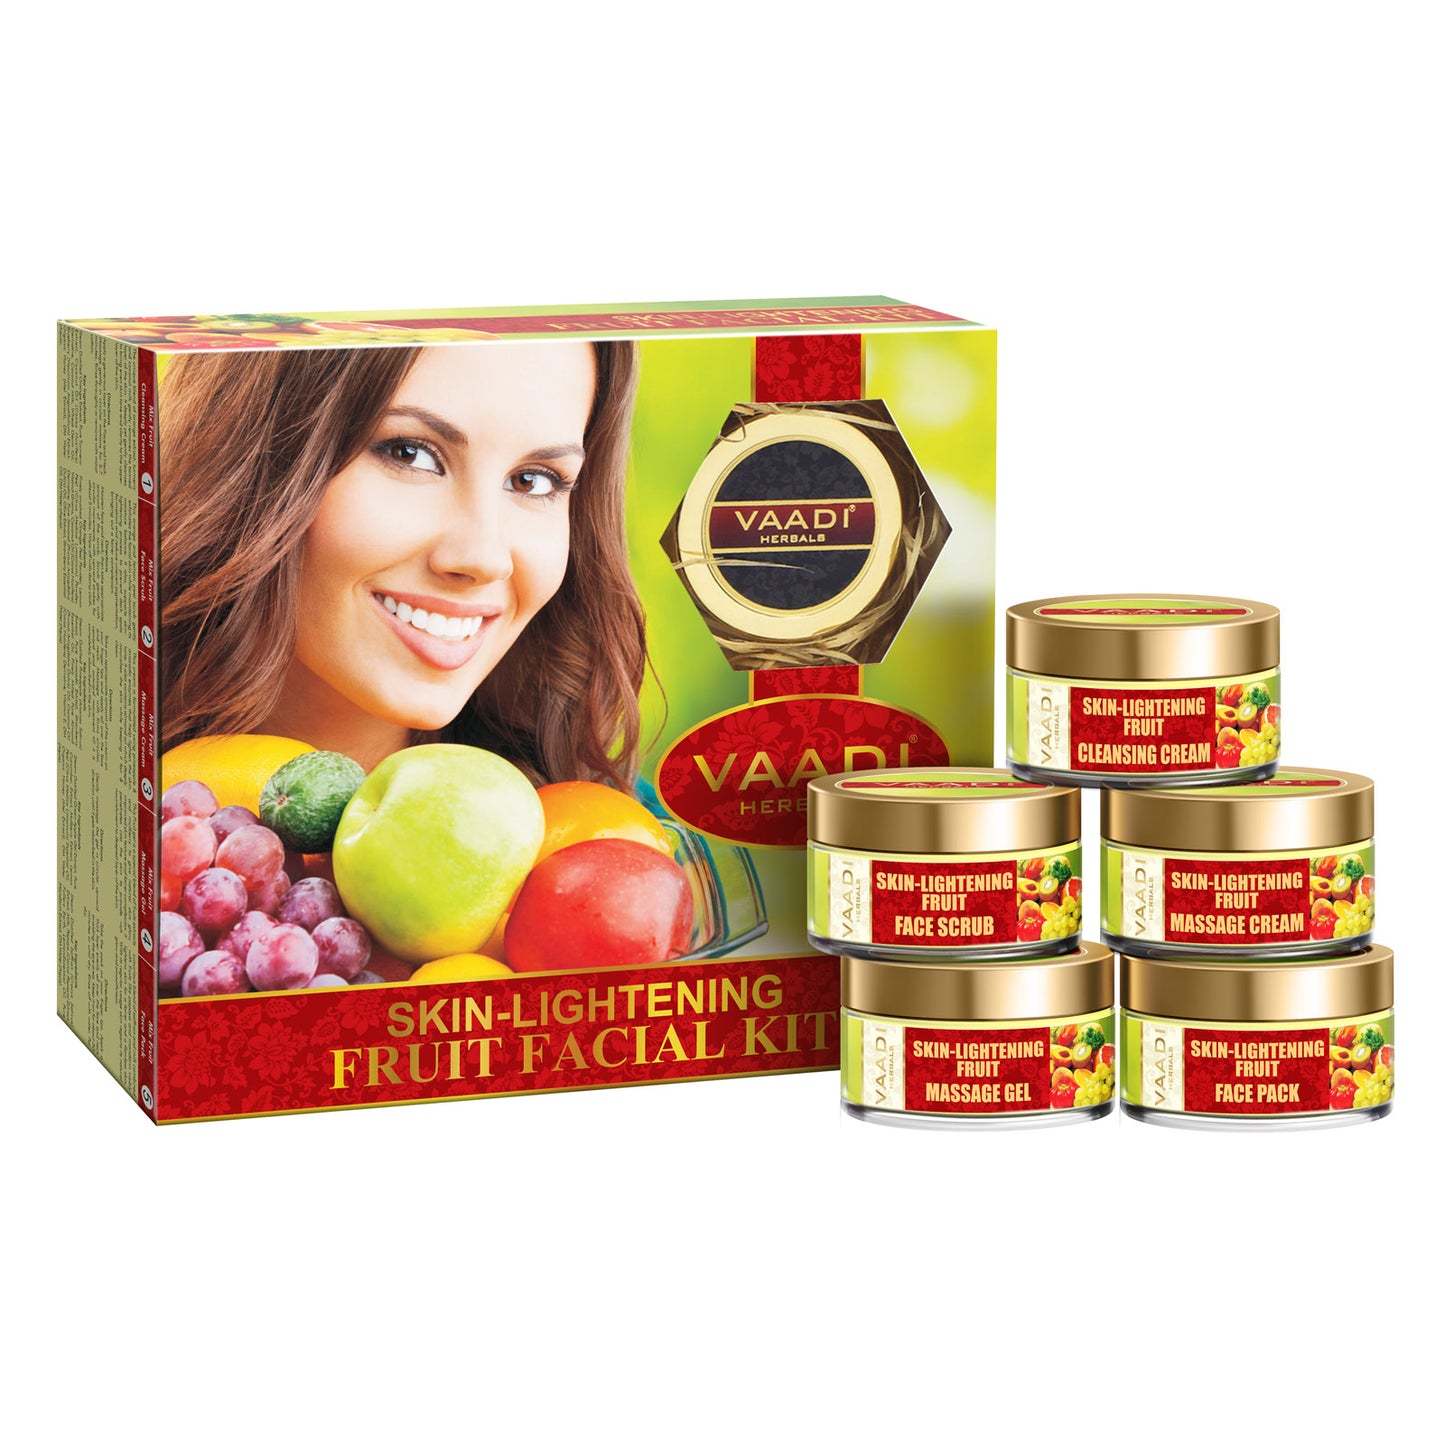 Skin-Lightening Fruit Facial Kit (270 gms)